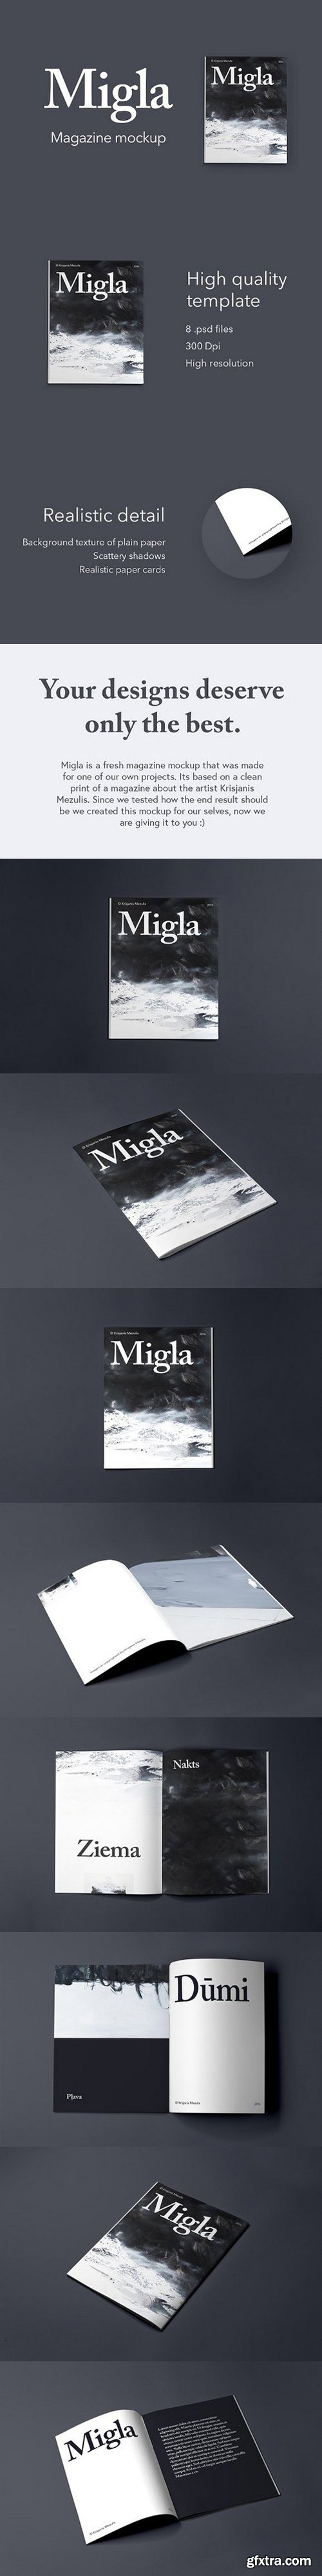 CM - Migla Print Magazine Mockup 829708